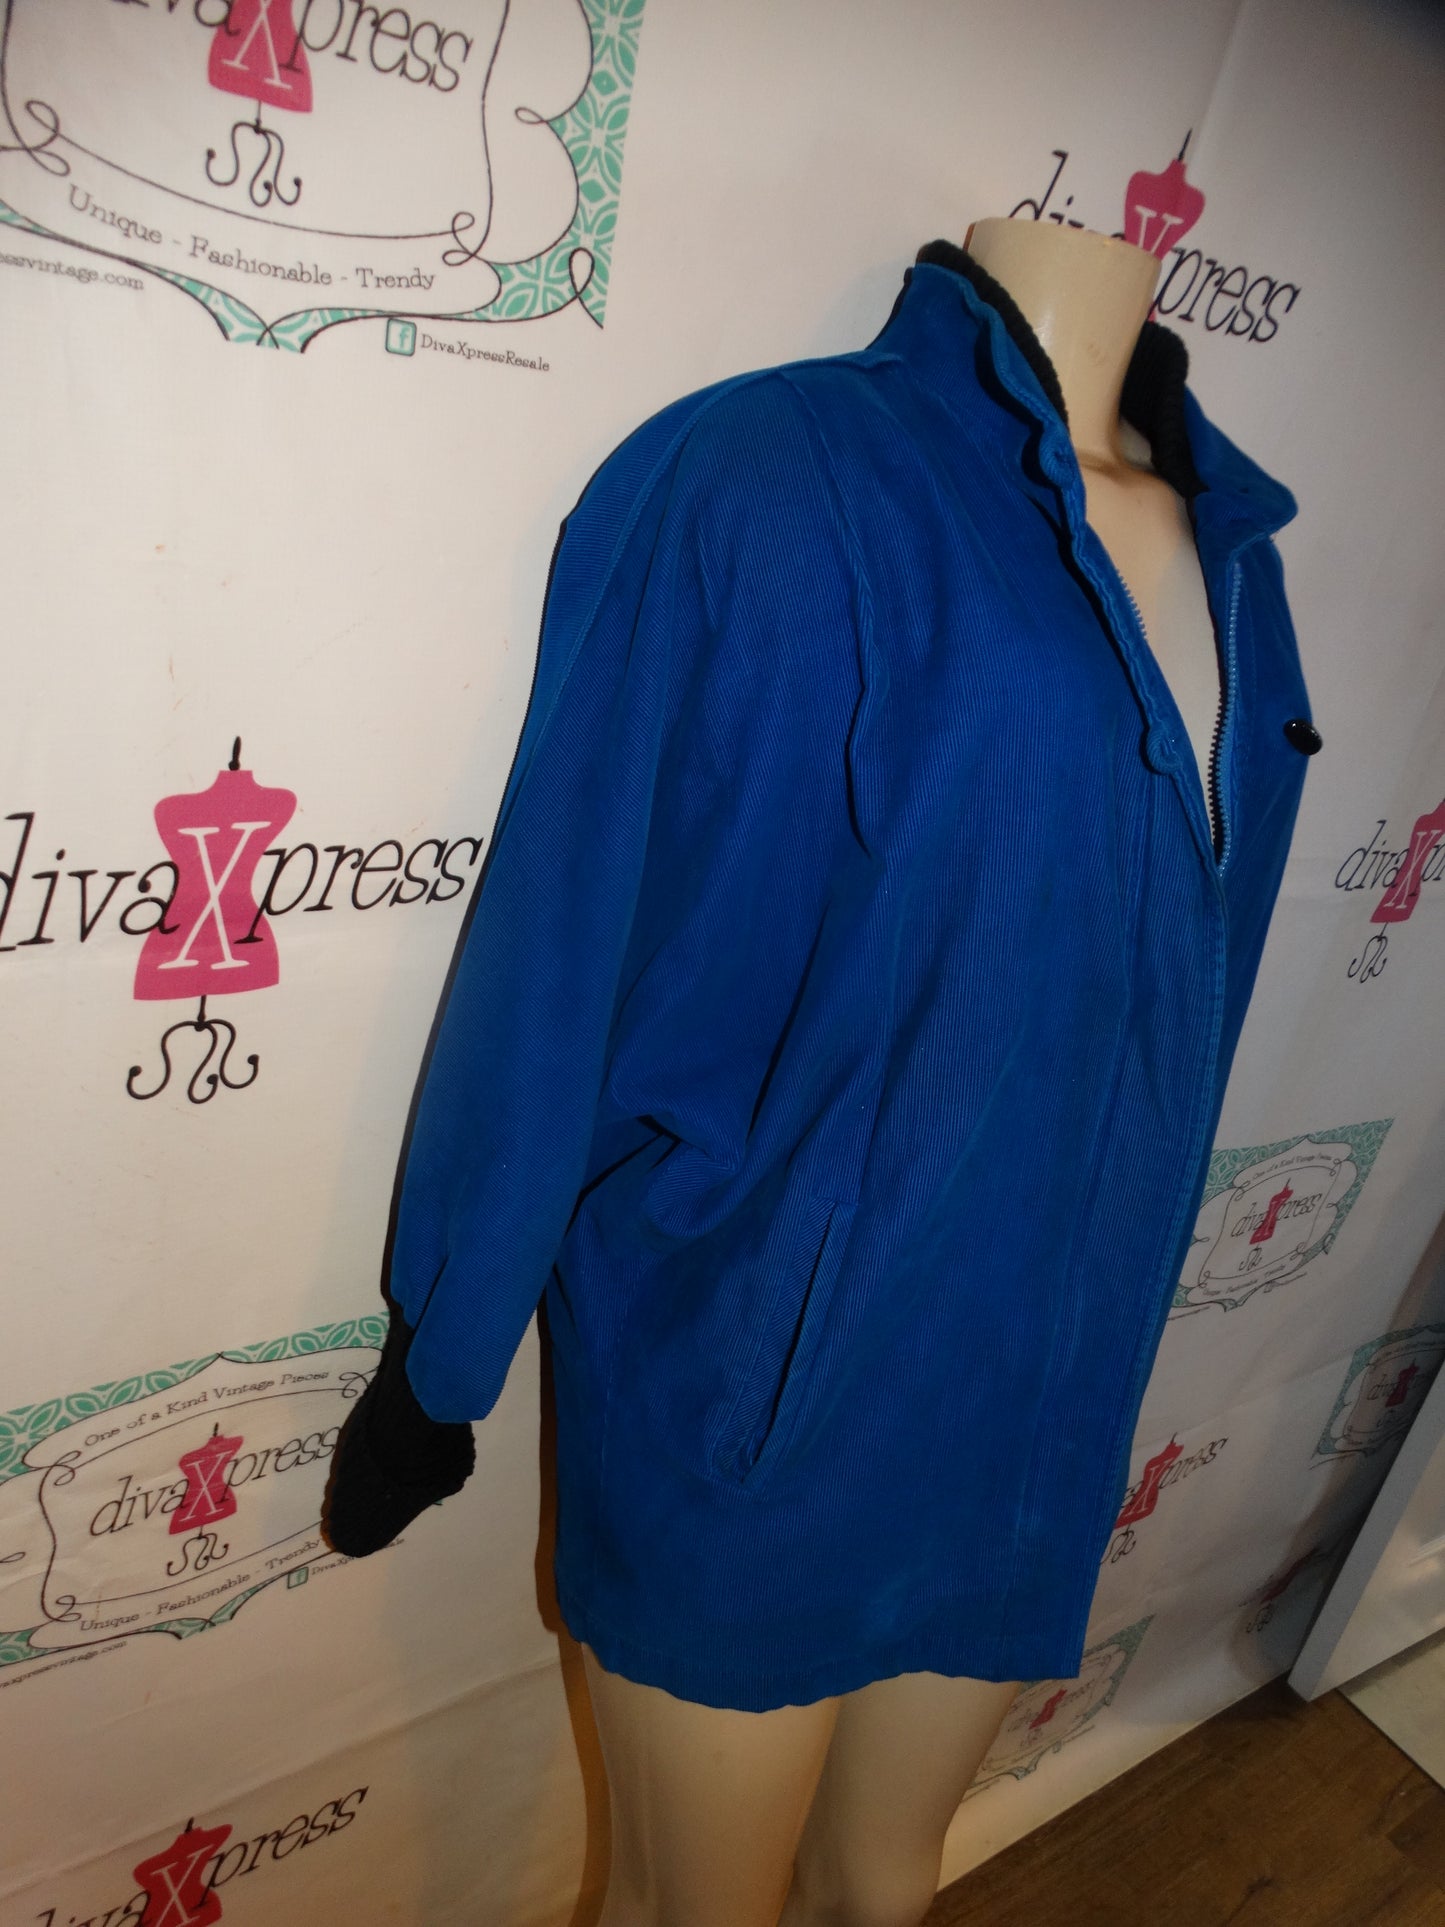 Vintage Portrait Blue corduroy  Jacket Size L